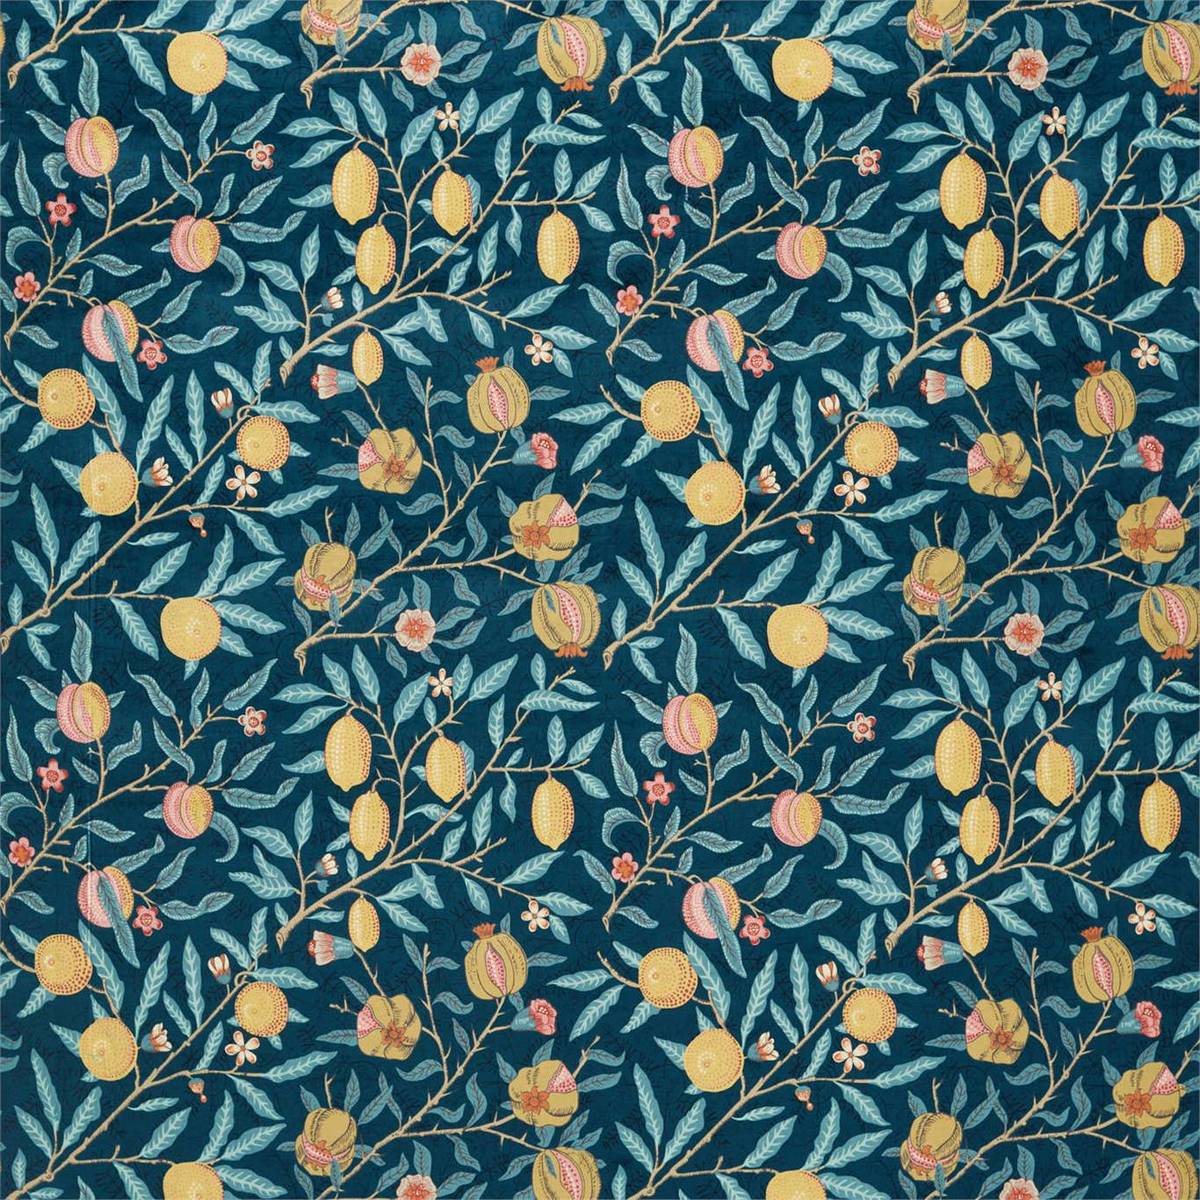 Fruit Velvet Indigo/Slate Fabric by William Morris & Co.